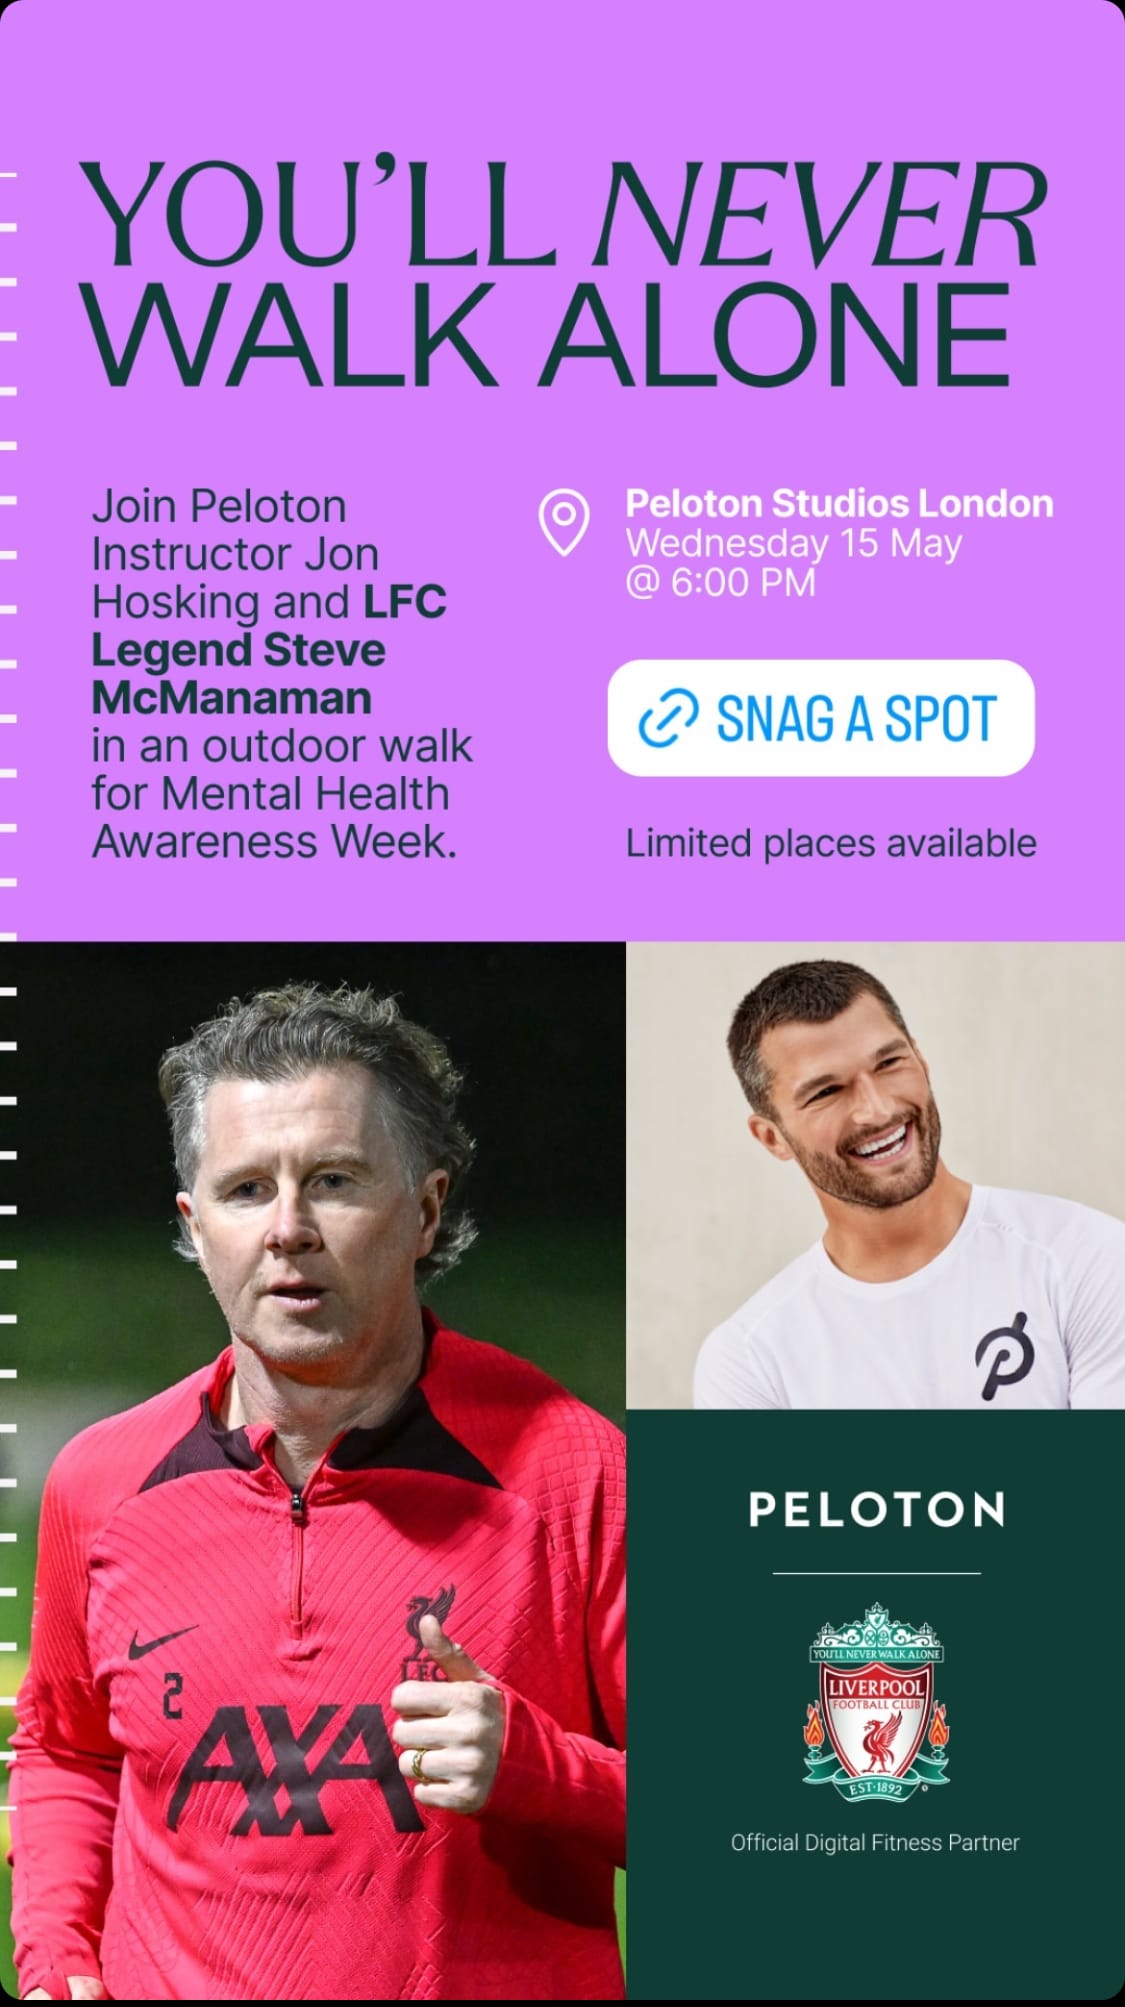 @PelotonStudios announces outdoor walk in London for Mental Health Awareness Week. Image credit Peloton social media.